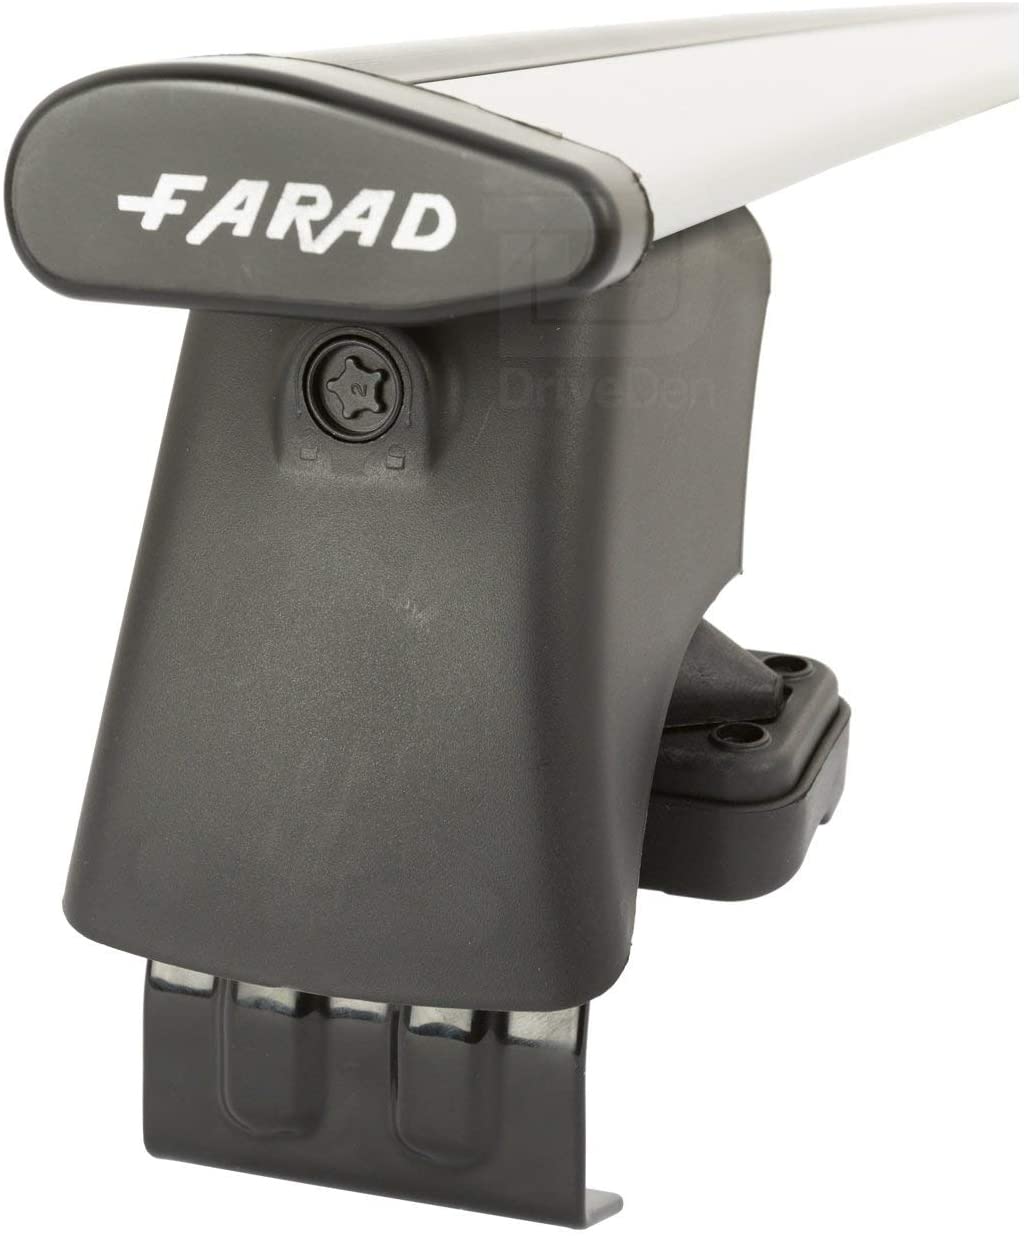 FARAD-Kit H2 per barre portatutto - Volkswagen Golf 5 2003-2008 (senza corrimano)